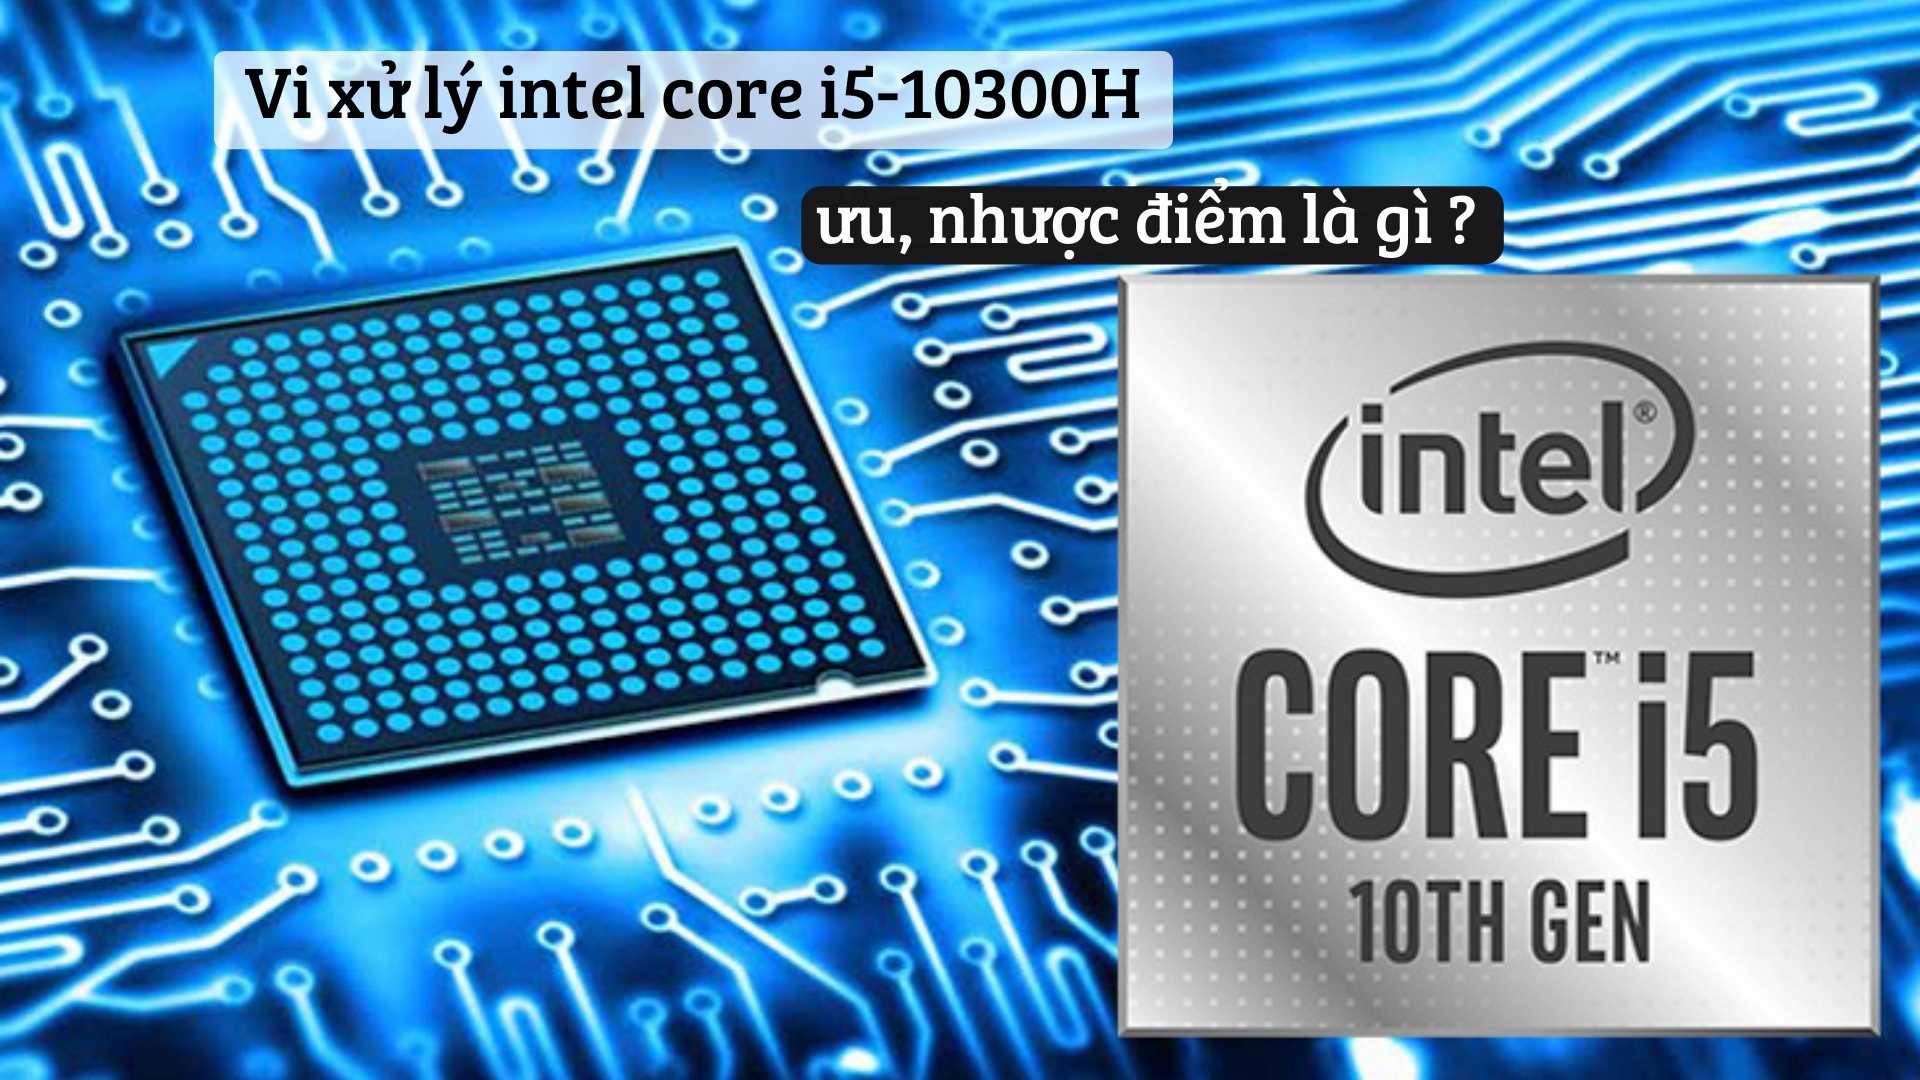 Vi xử lý intel core i5-10300H – ưu, nhược điểm là gì ?